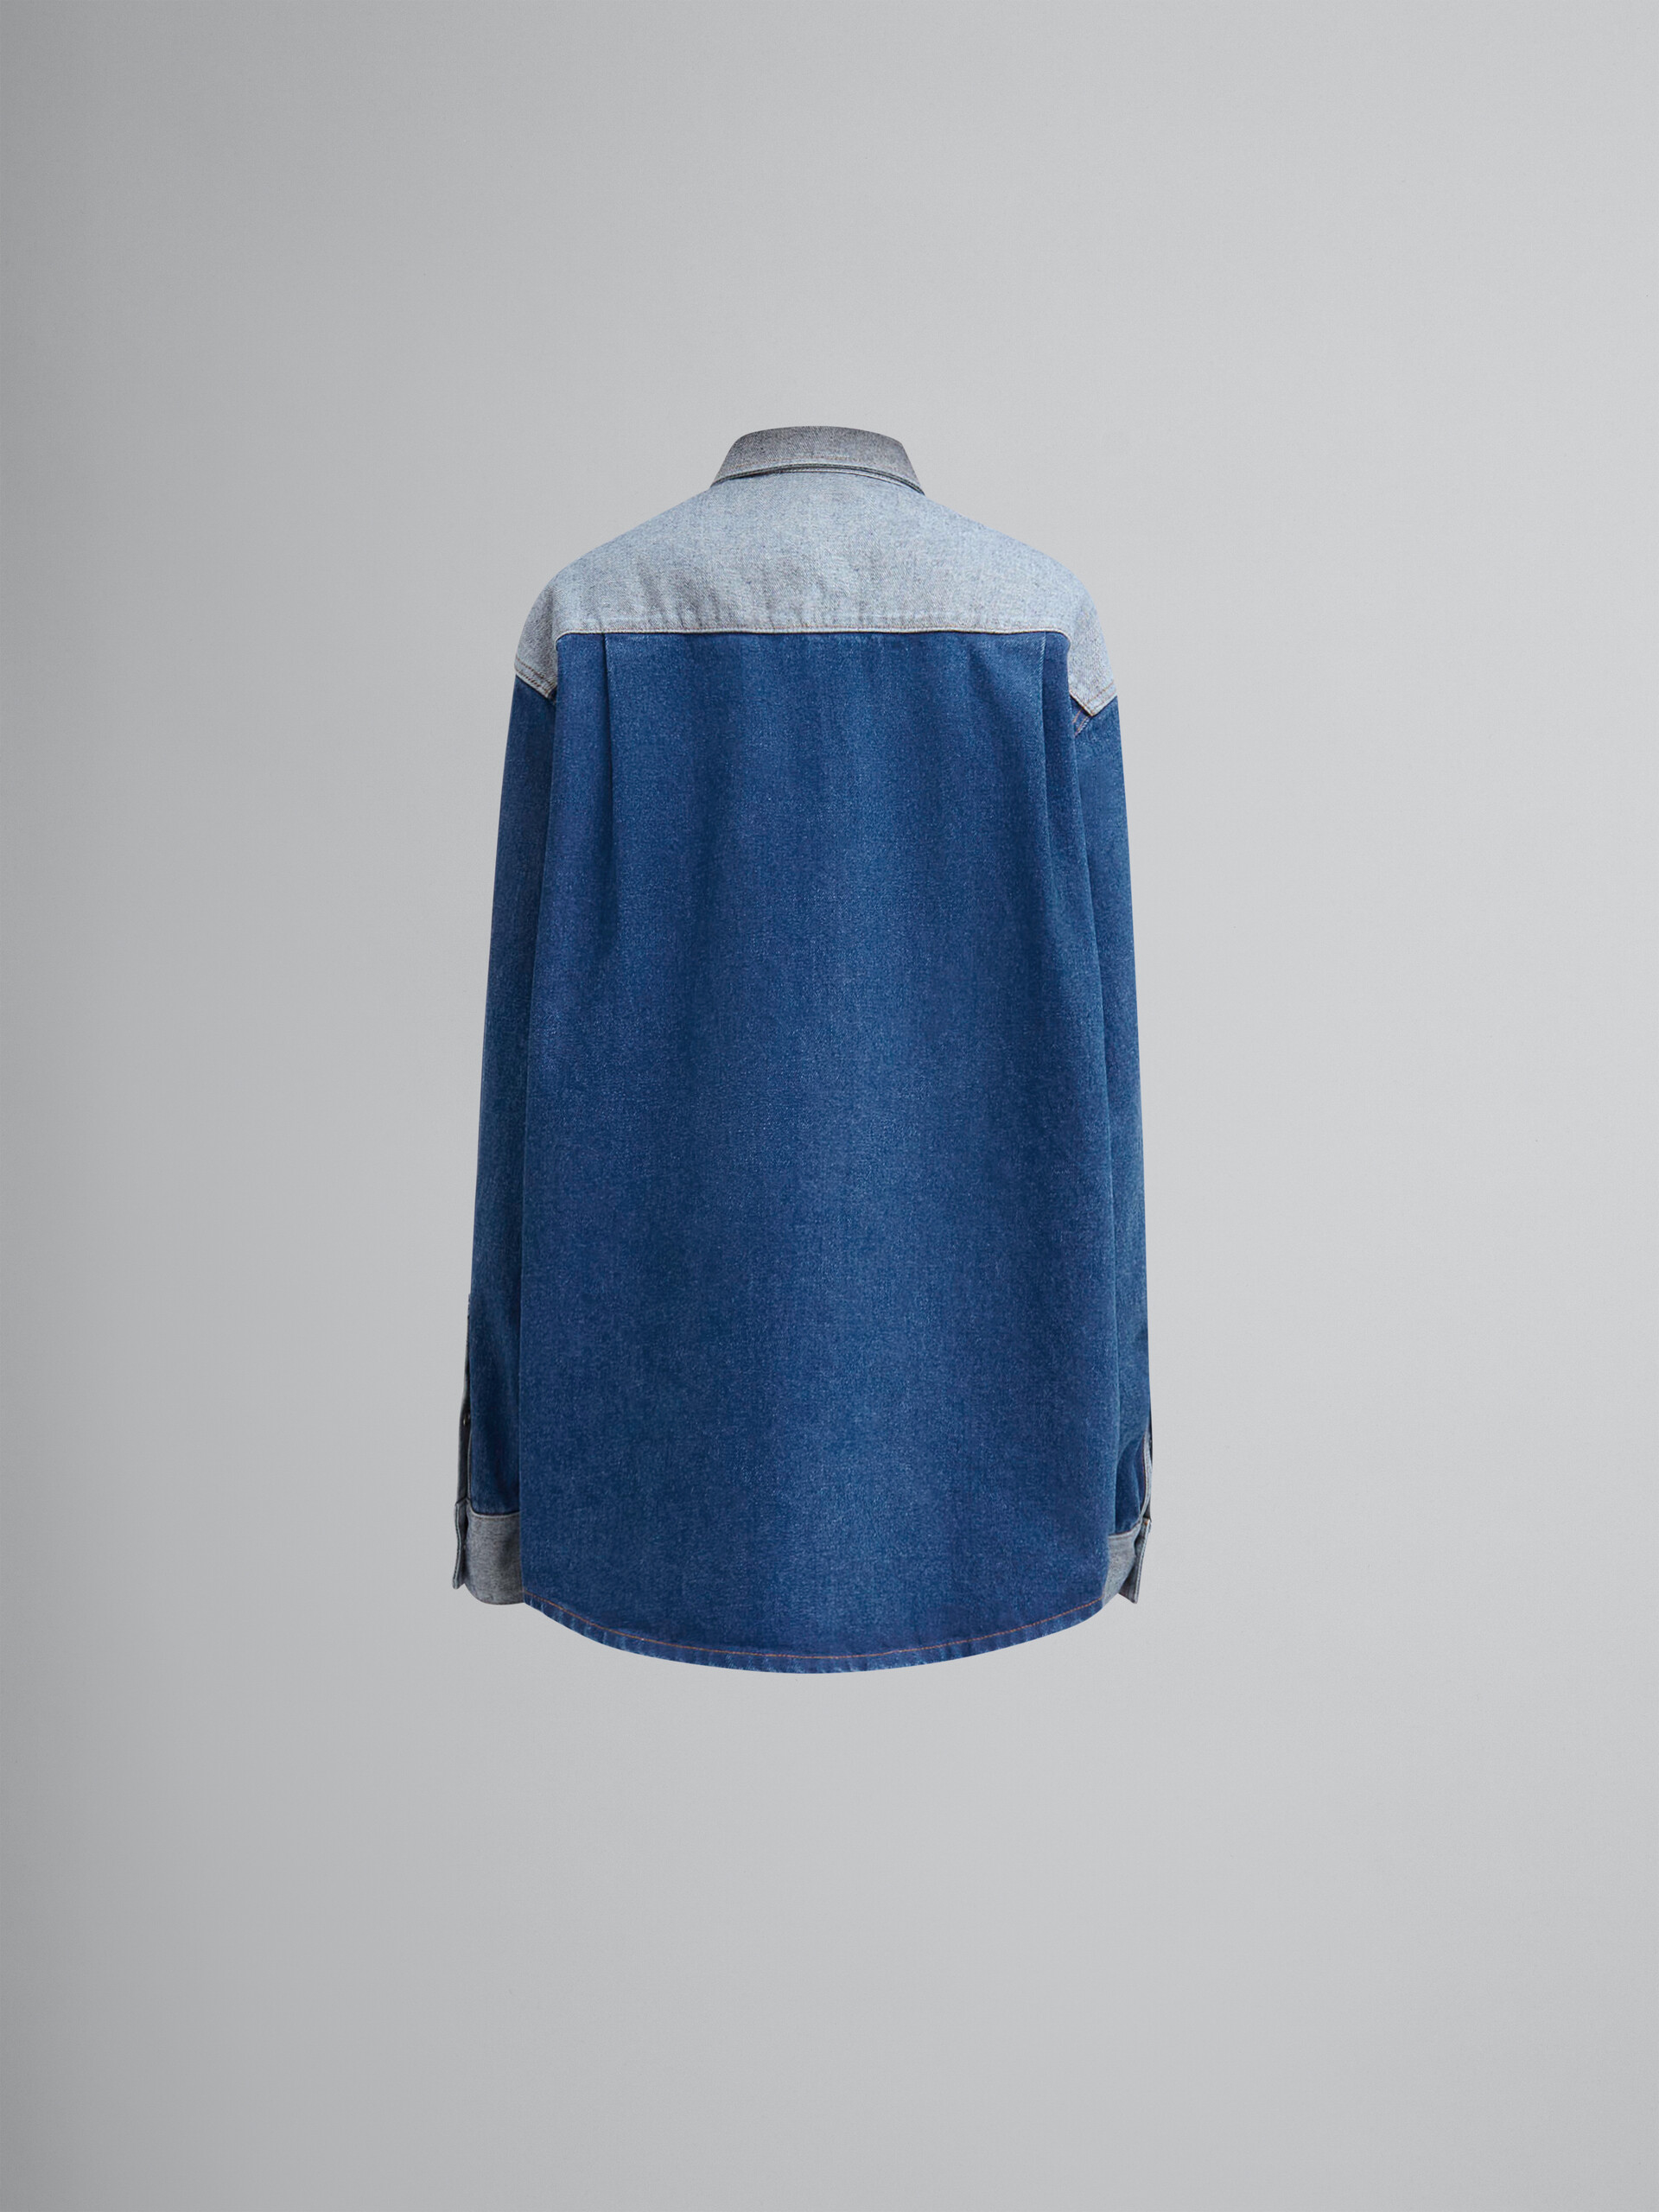 Camicia in denim bicolore blu con bordi a taglio vivo - Camicie - Image 2